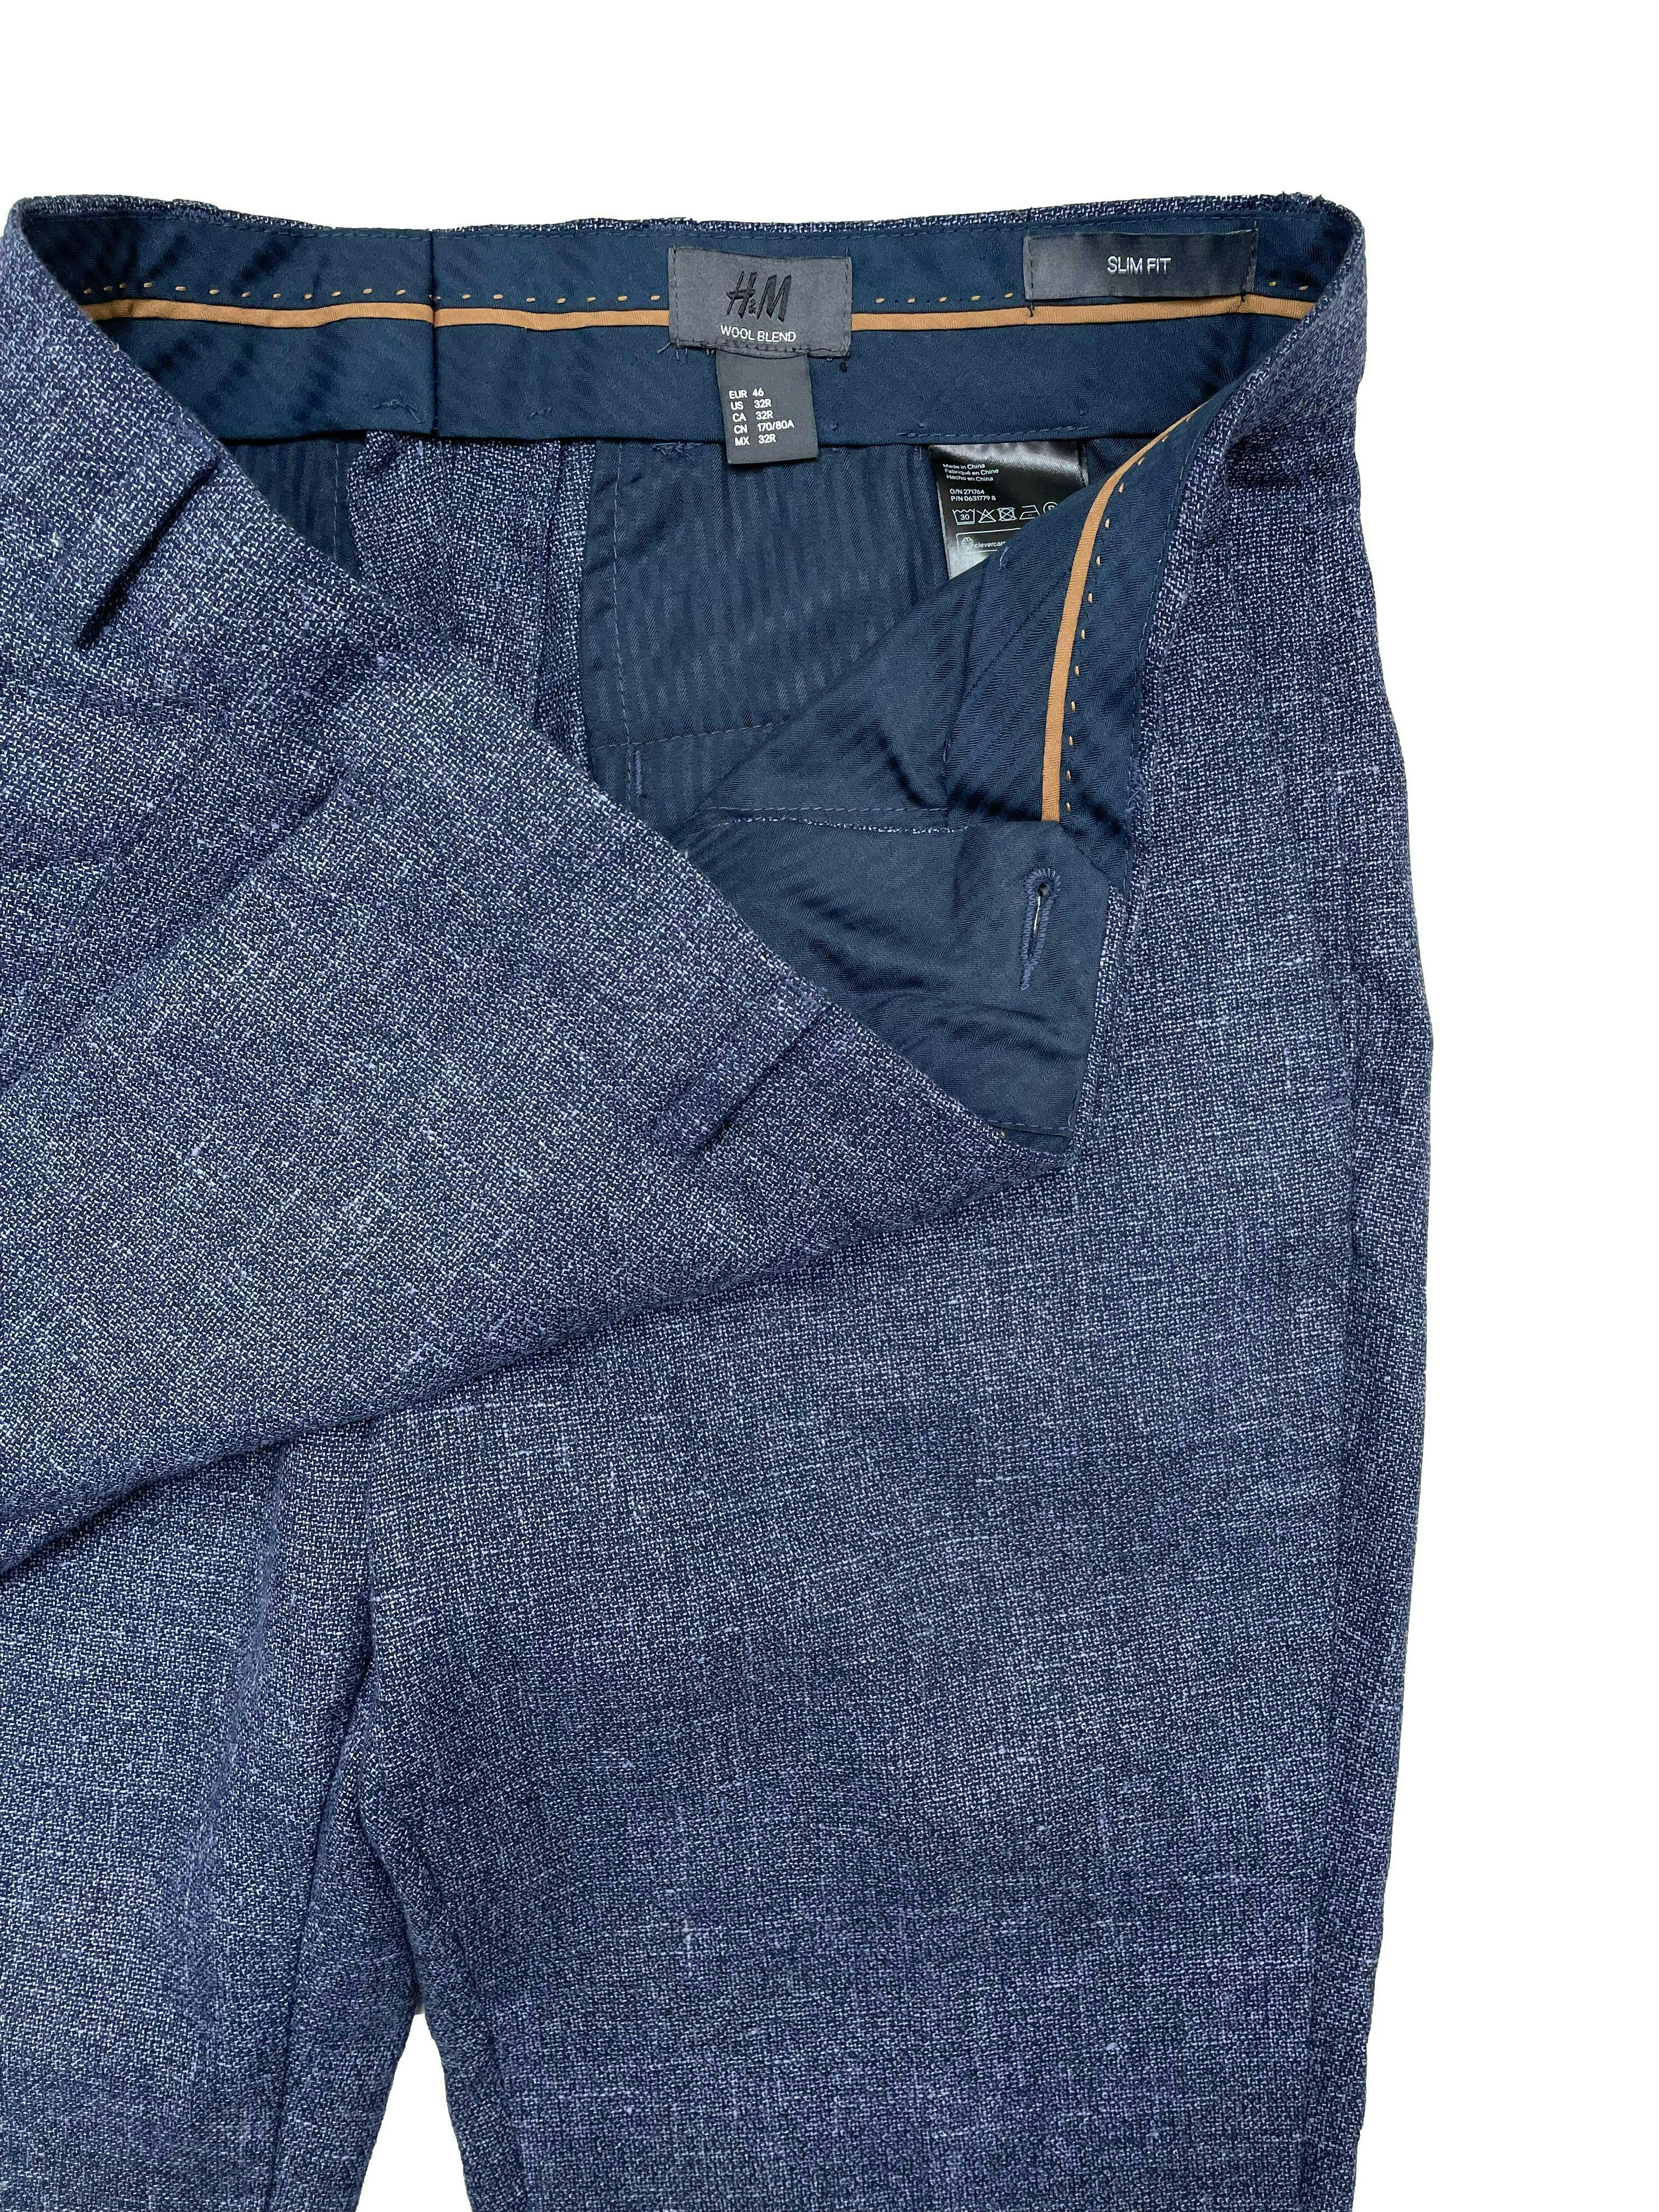 Pantalón slim H&M azul jaspeado de tweed con mezcla de lana y lino, tiene cuatro bolsillos. Cintura 86cm, Largo 105cm.